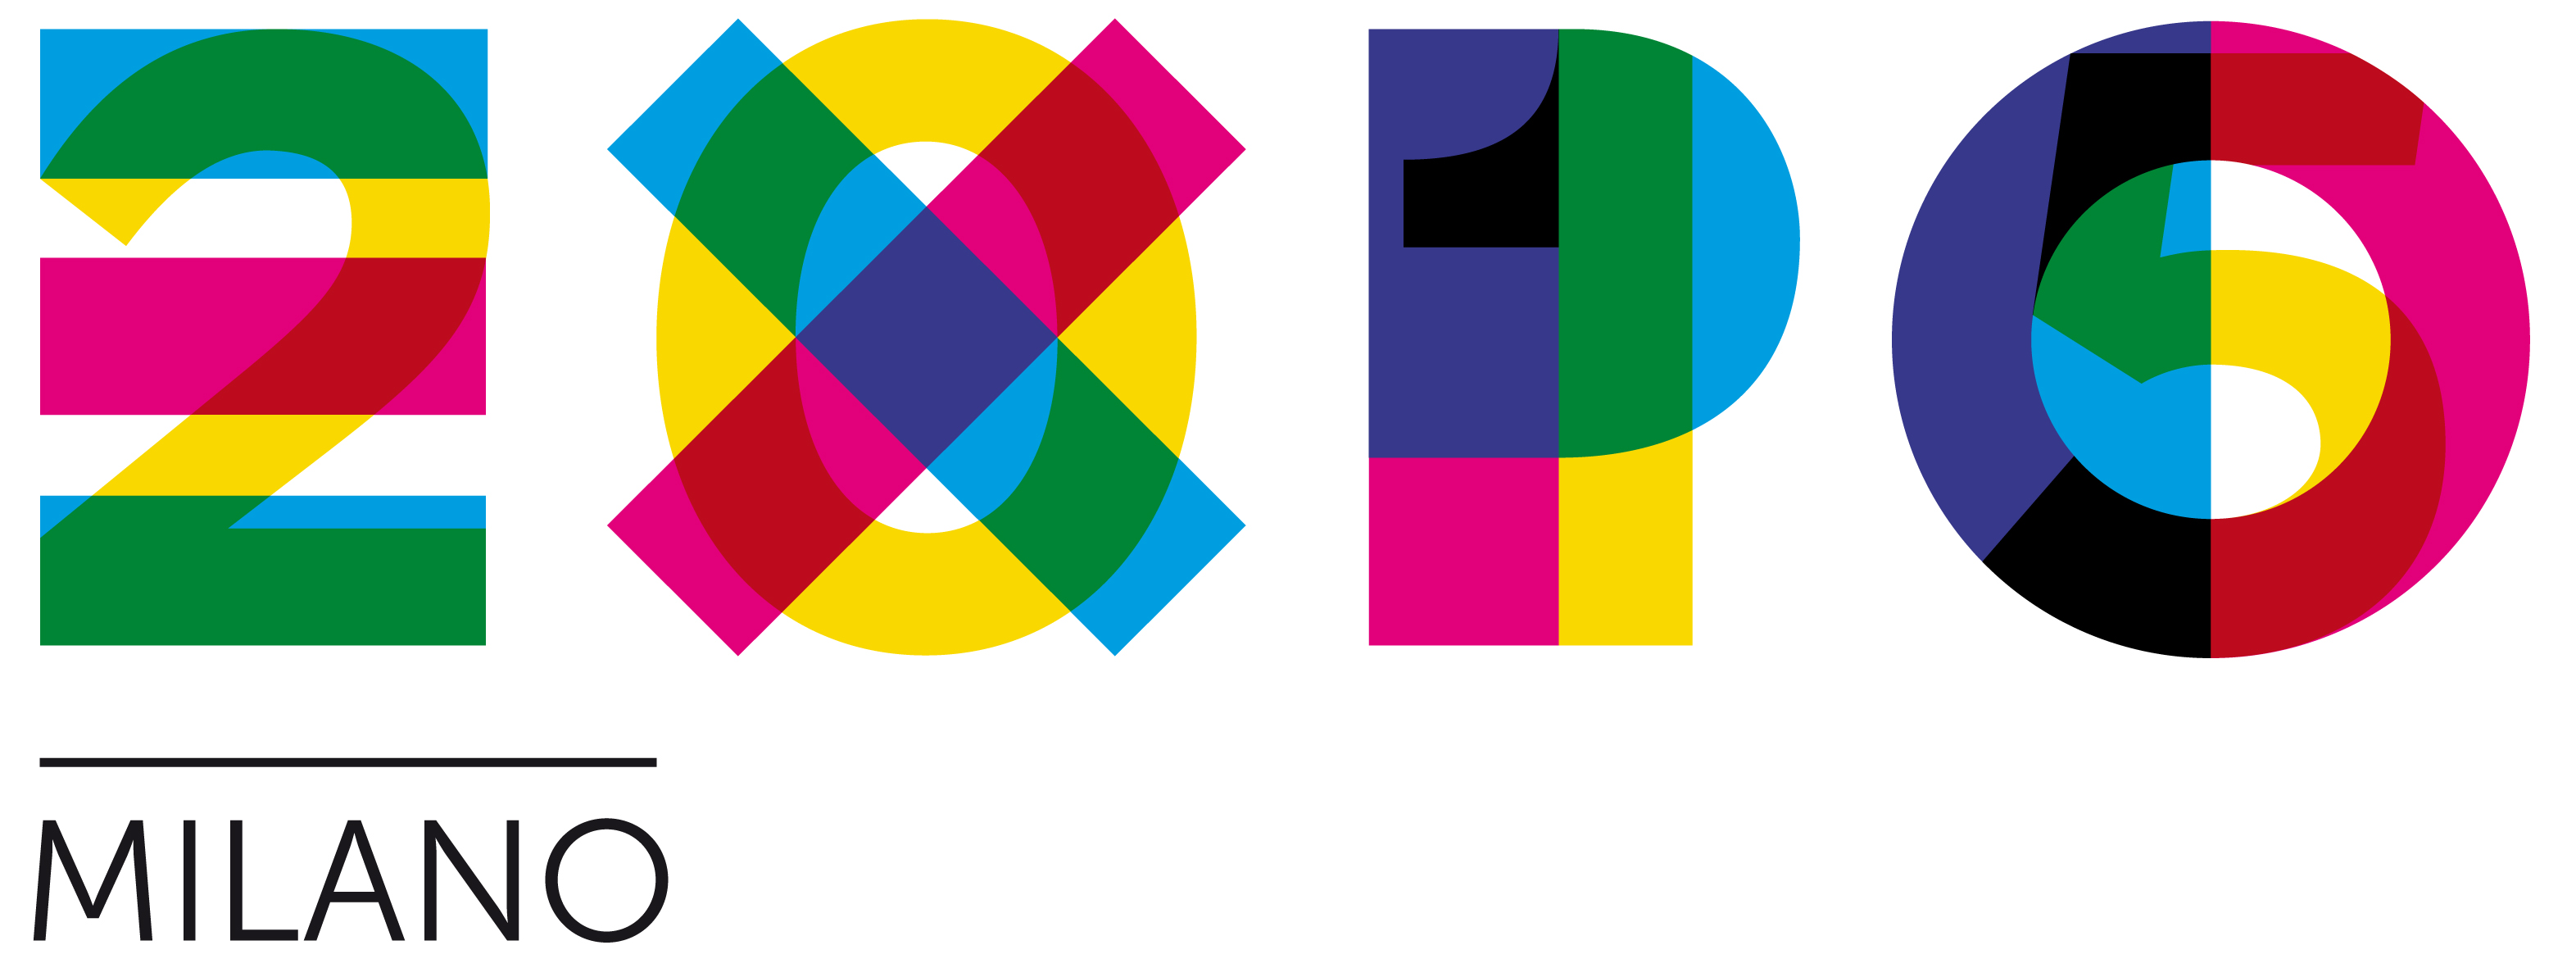 expo 2015 milan logo